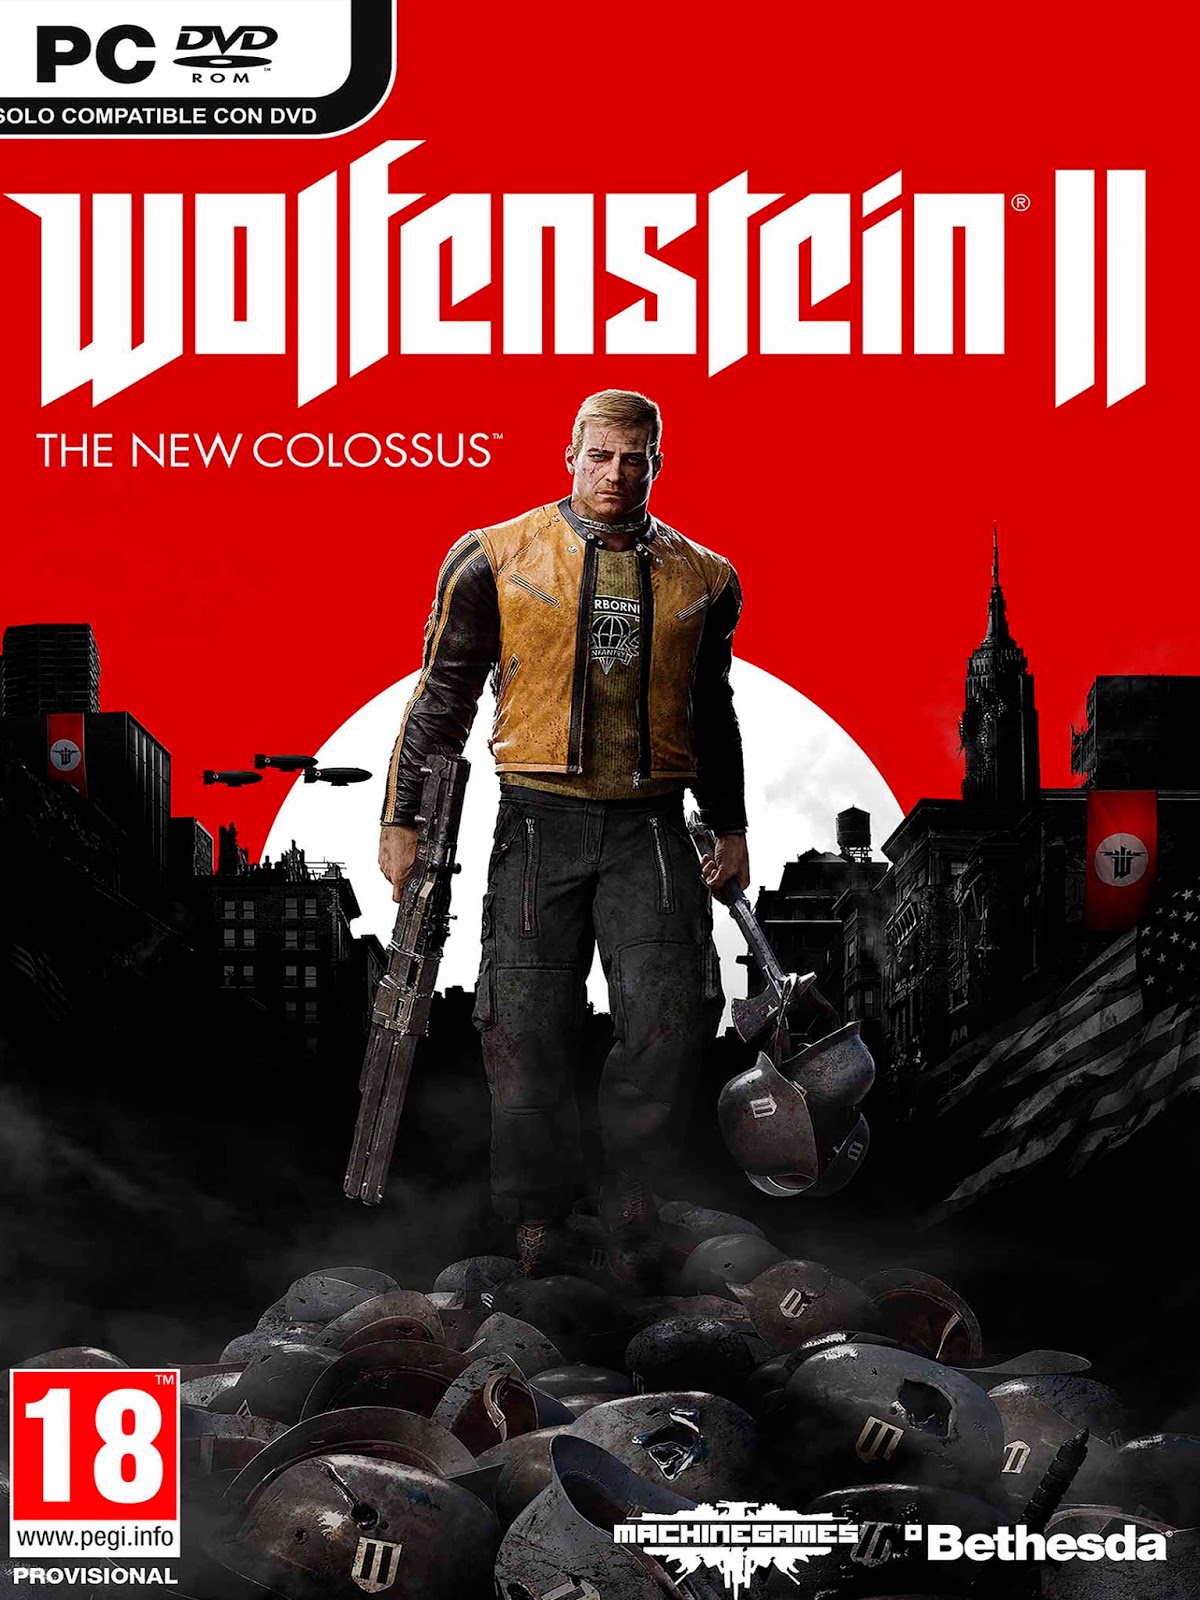 New colossus читы. Wolfenstein the New Colossus системные требования. Вольфенштайн 2 системные требования. Wolfenstein II the New Colossus системные требования на ПК. Wolfenstein 2 the Colossus системные требования.